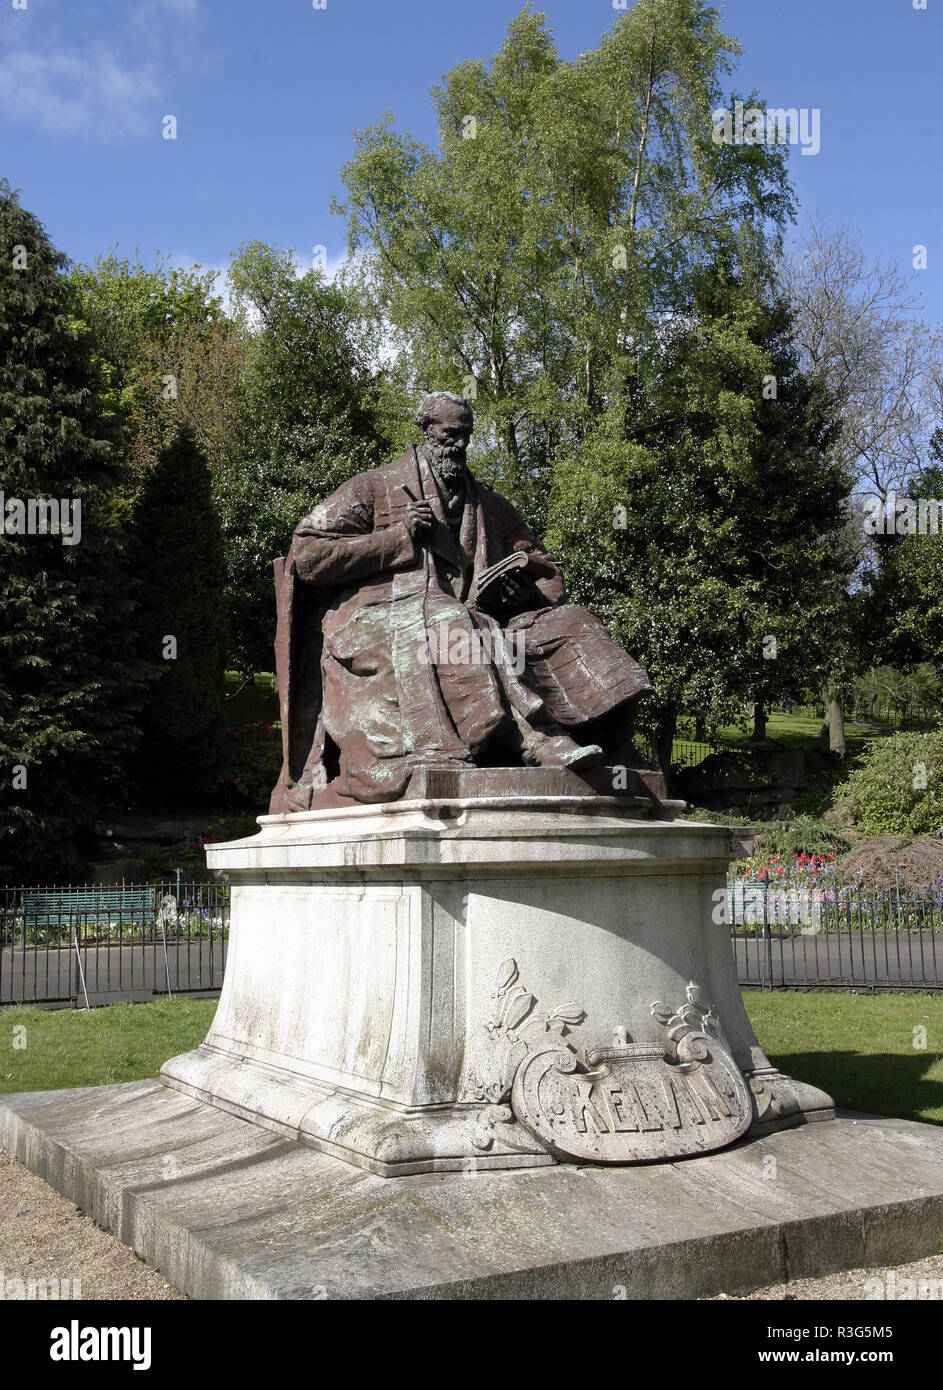 Questa statua di Lord Kelvin, (William Thomson), che fu un fisico matematico e ingegnere ed è meglio conosciuto per escogitare la temperatura assoluta scala. La statua si trova in Kelvingrove Park accanto al fiume Kelvin a Glasgow. Foto Stock